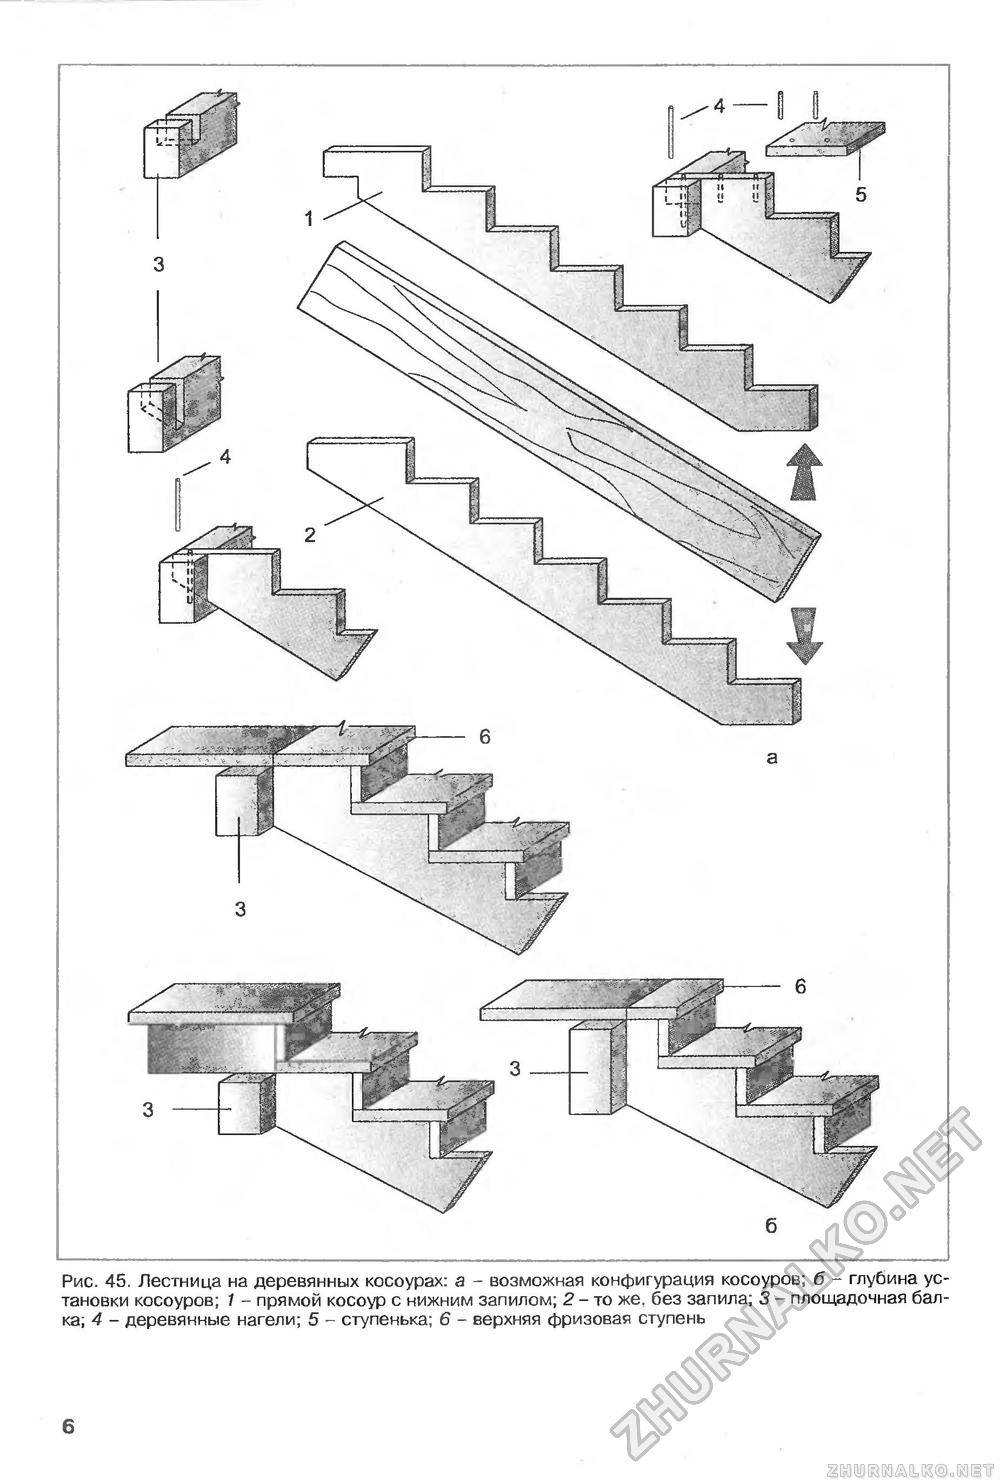 Схема ступенек. Косоур для лестницы из дерева чертежи. Косоур к1 чертеж. Крепление косоура к ступени чертеж. Деревянная лестница на косоурах чертеж.